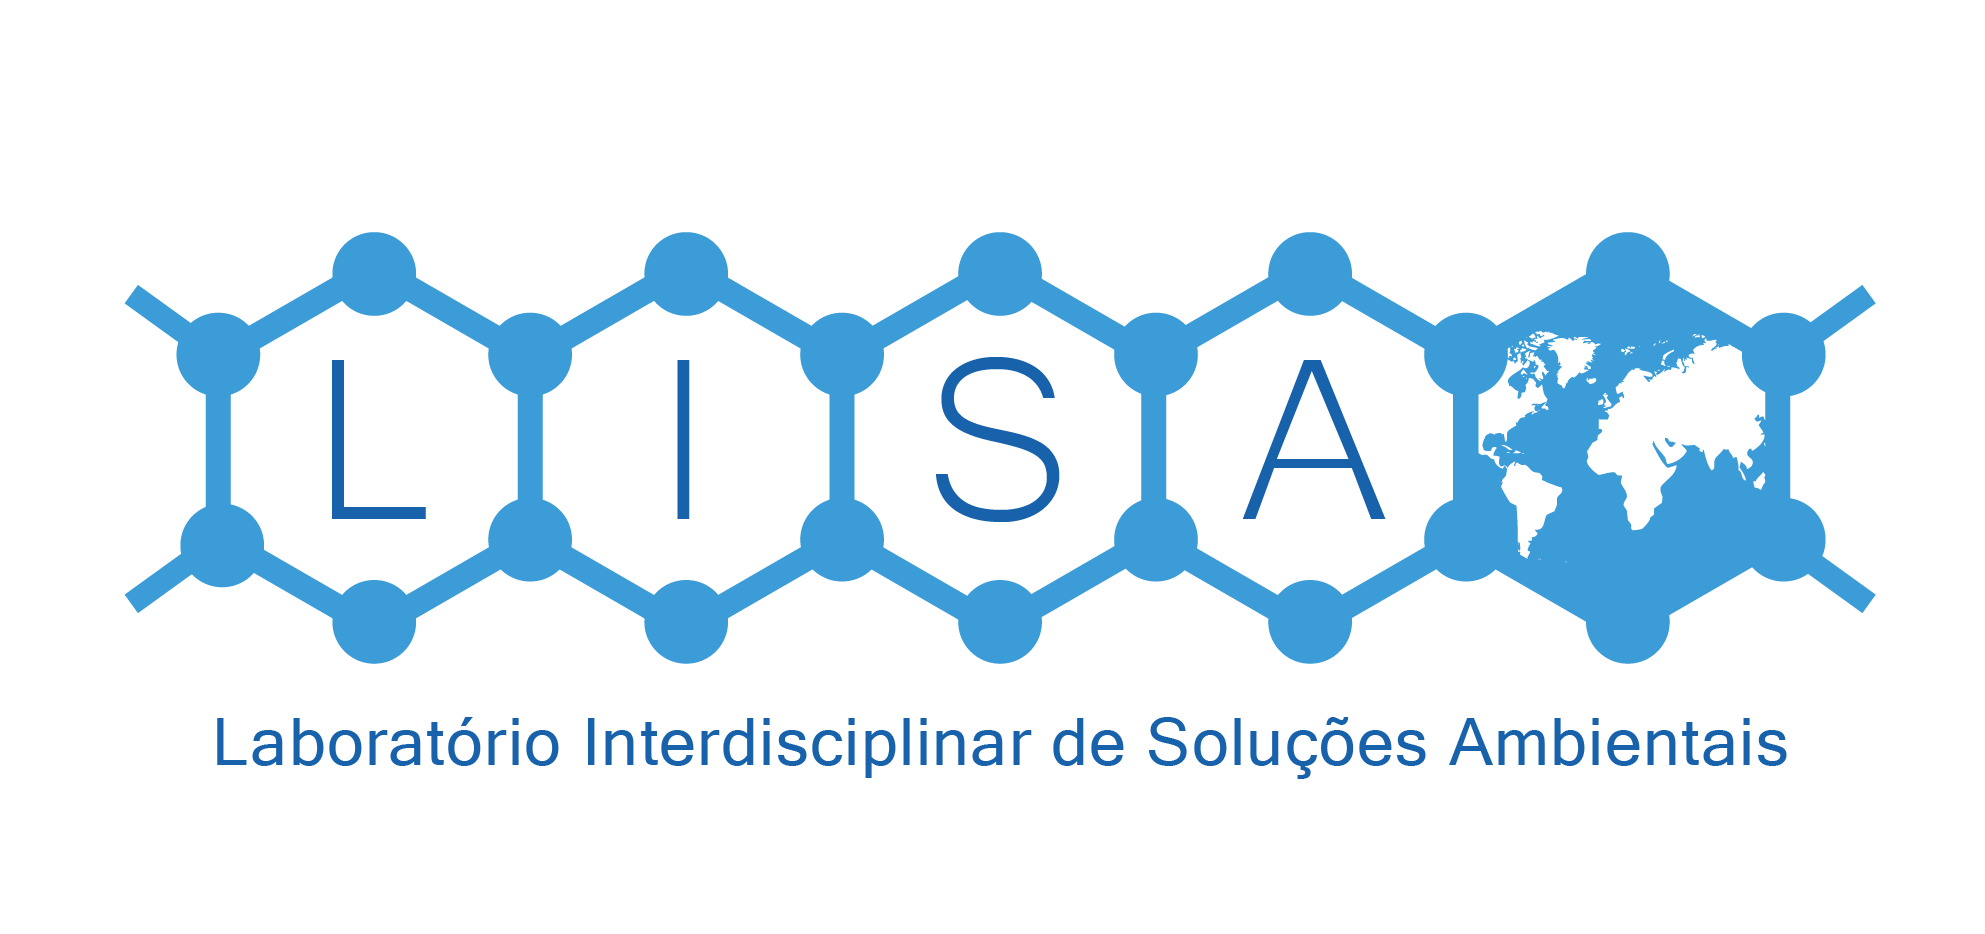 LISA - Laboratório Interdisciplinar de Soluções Ambientais